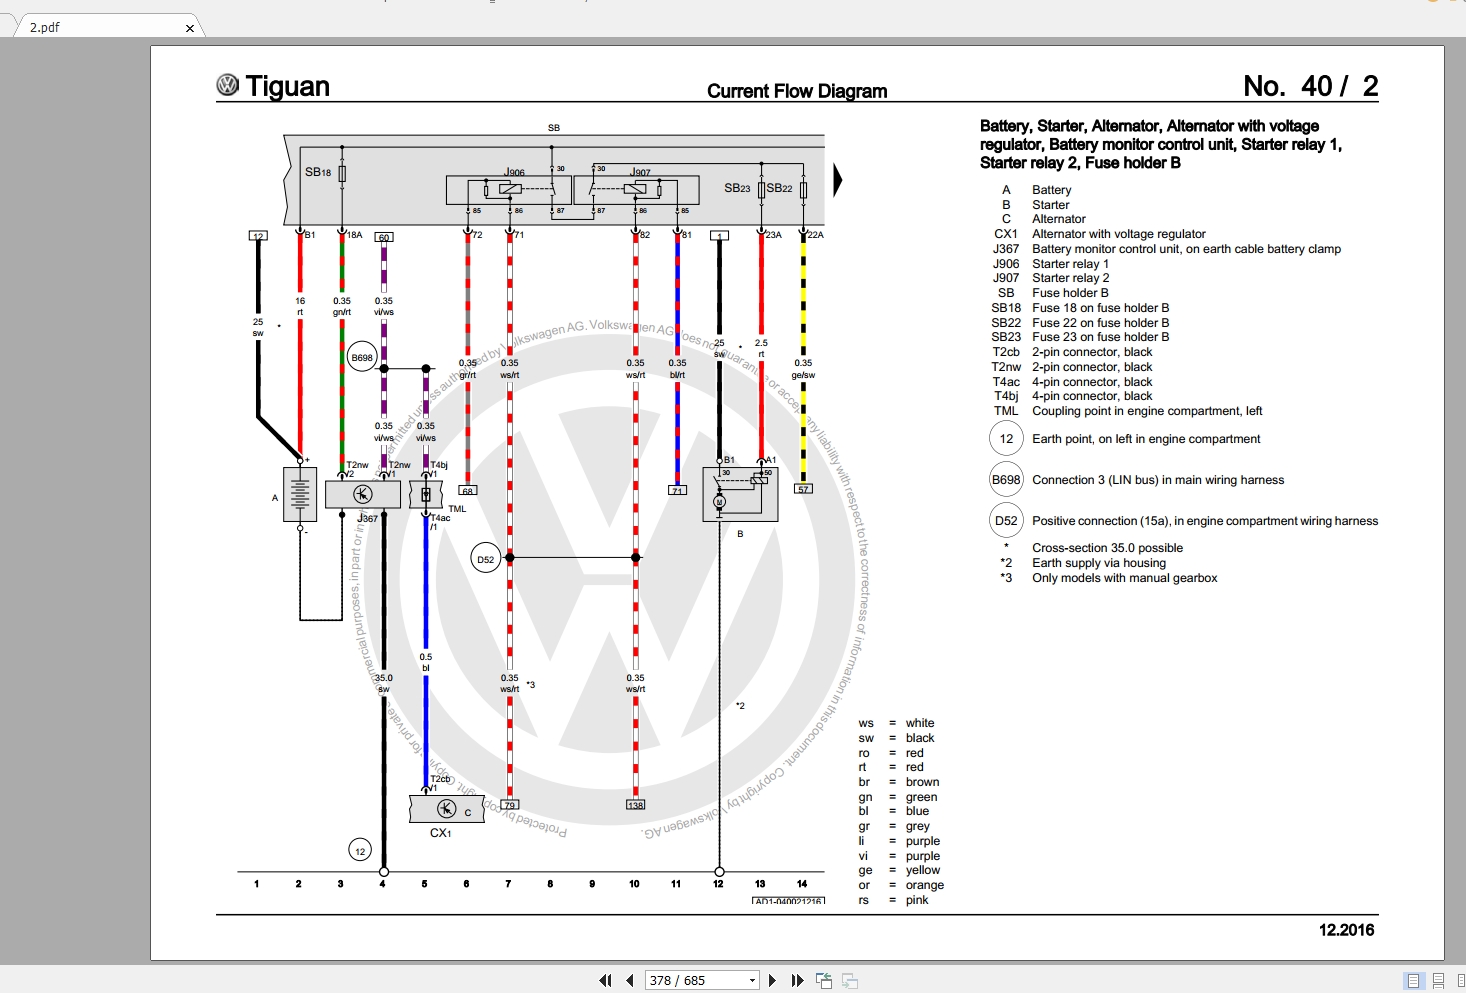 Volkswagen Tiguan 2010 2016 Wiring Diagrams Auto Repair Manual Forum Heavy Equipment Forums Download Repair Workshop Manual